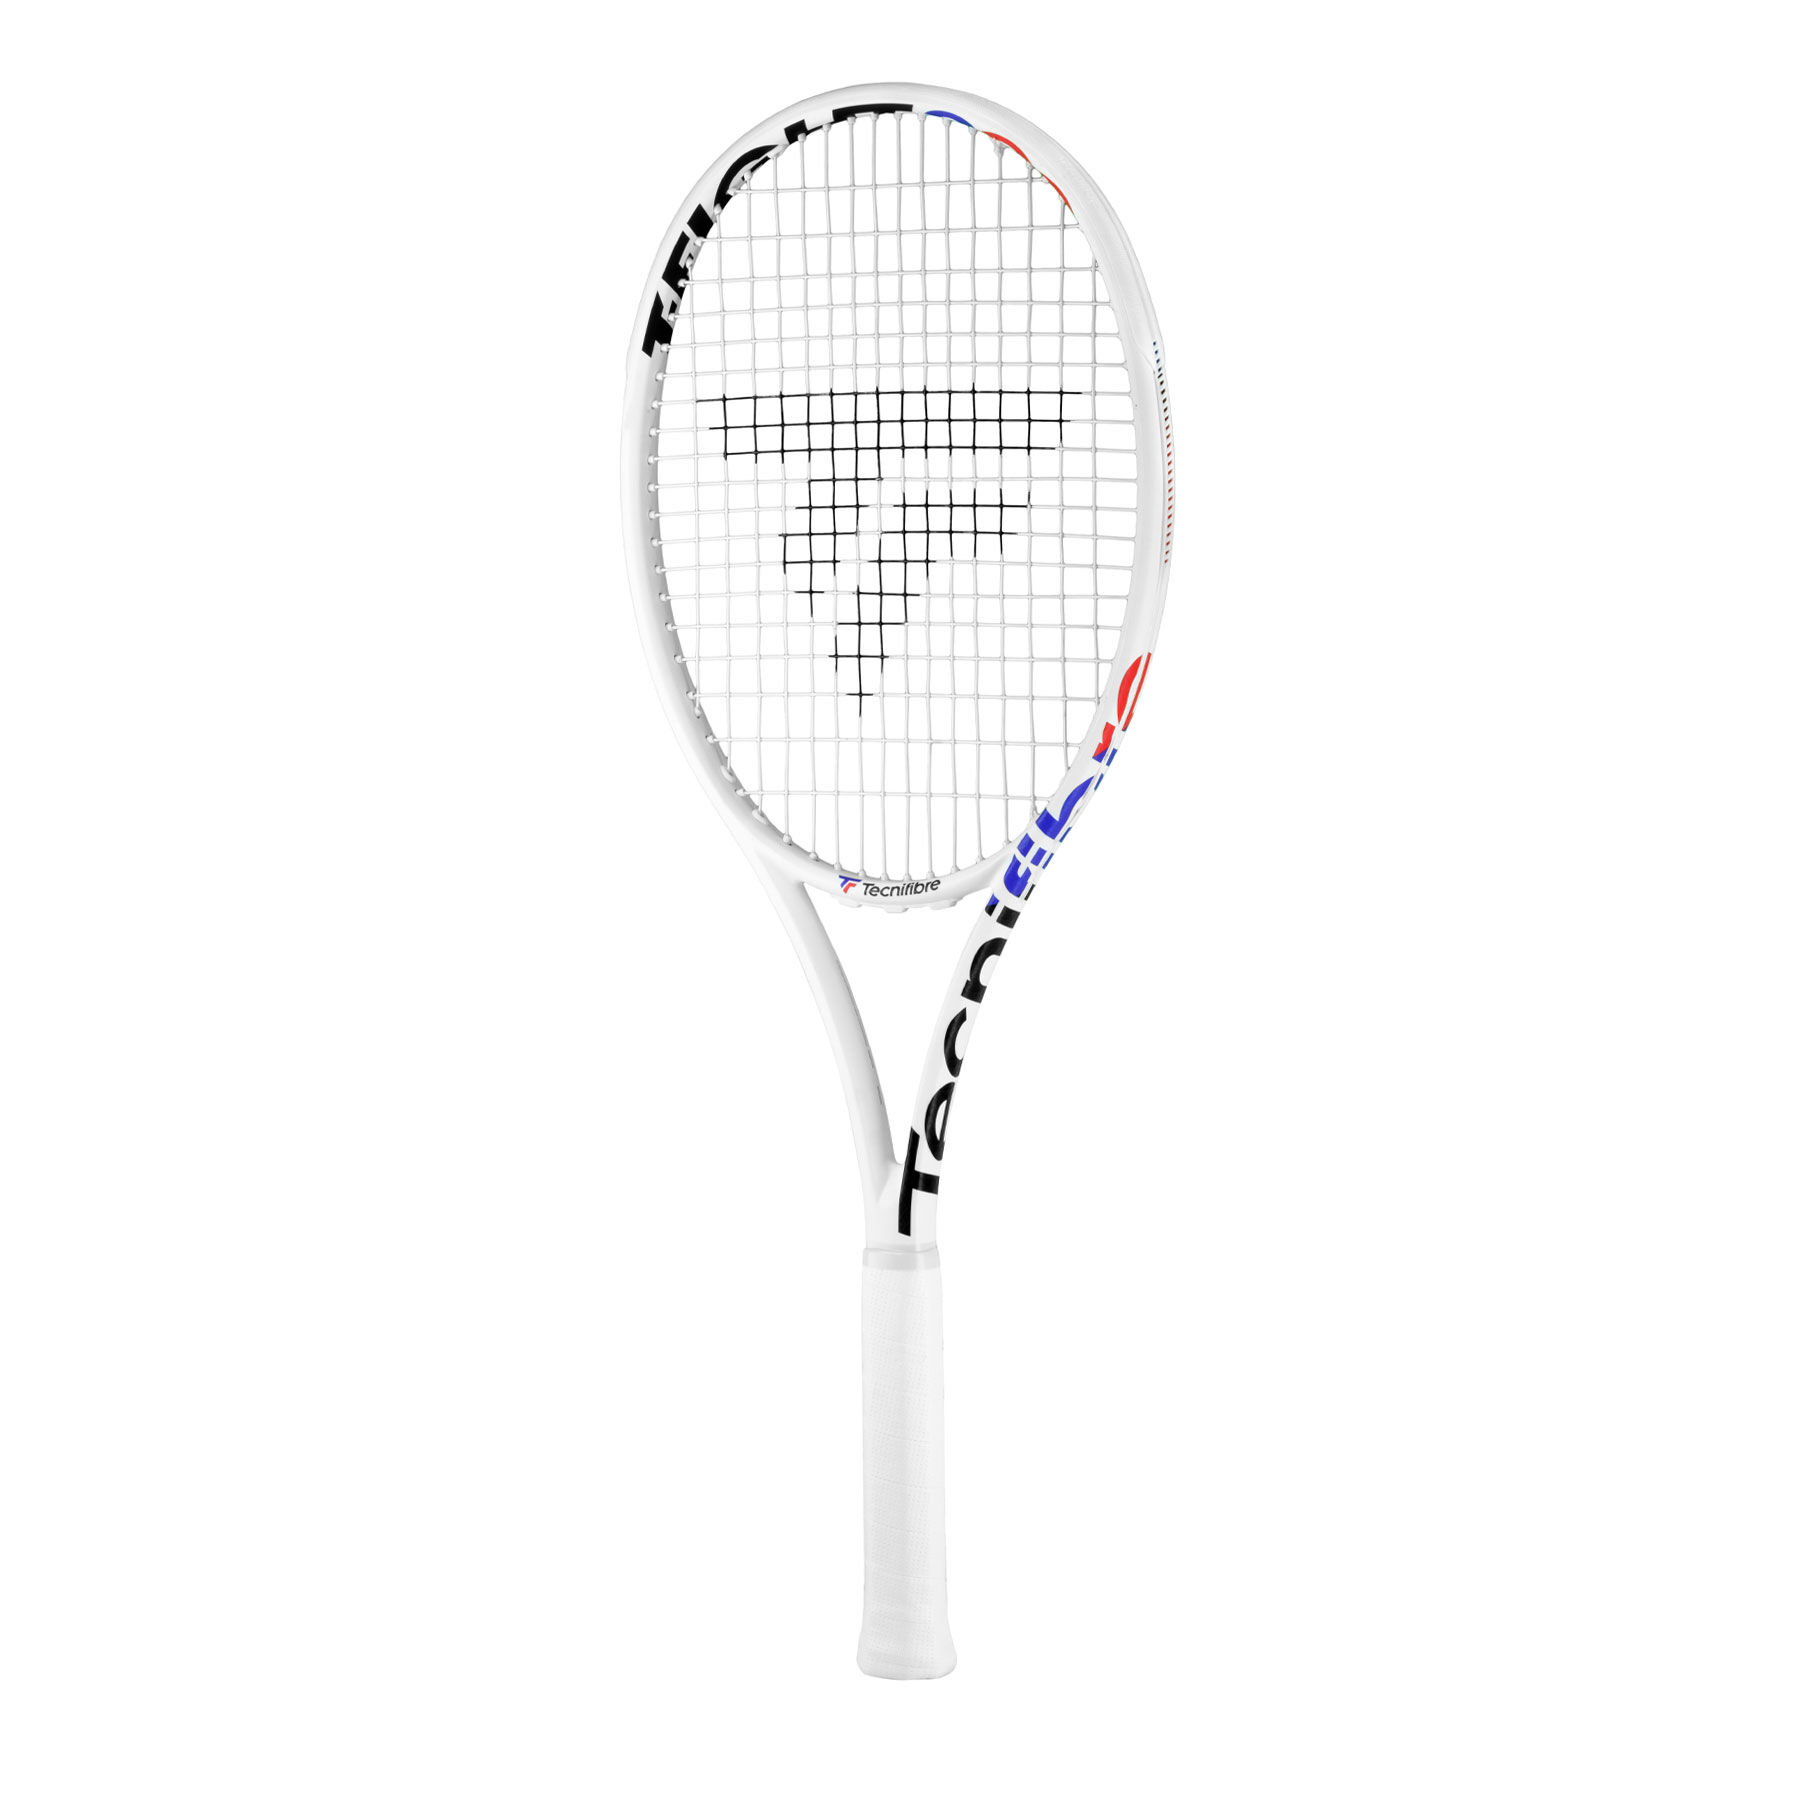 Tecnifibre - Tennis, squash and padel sports equipment